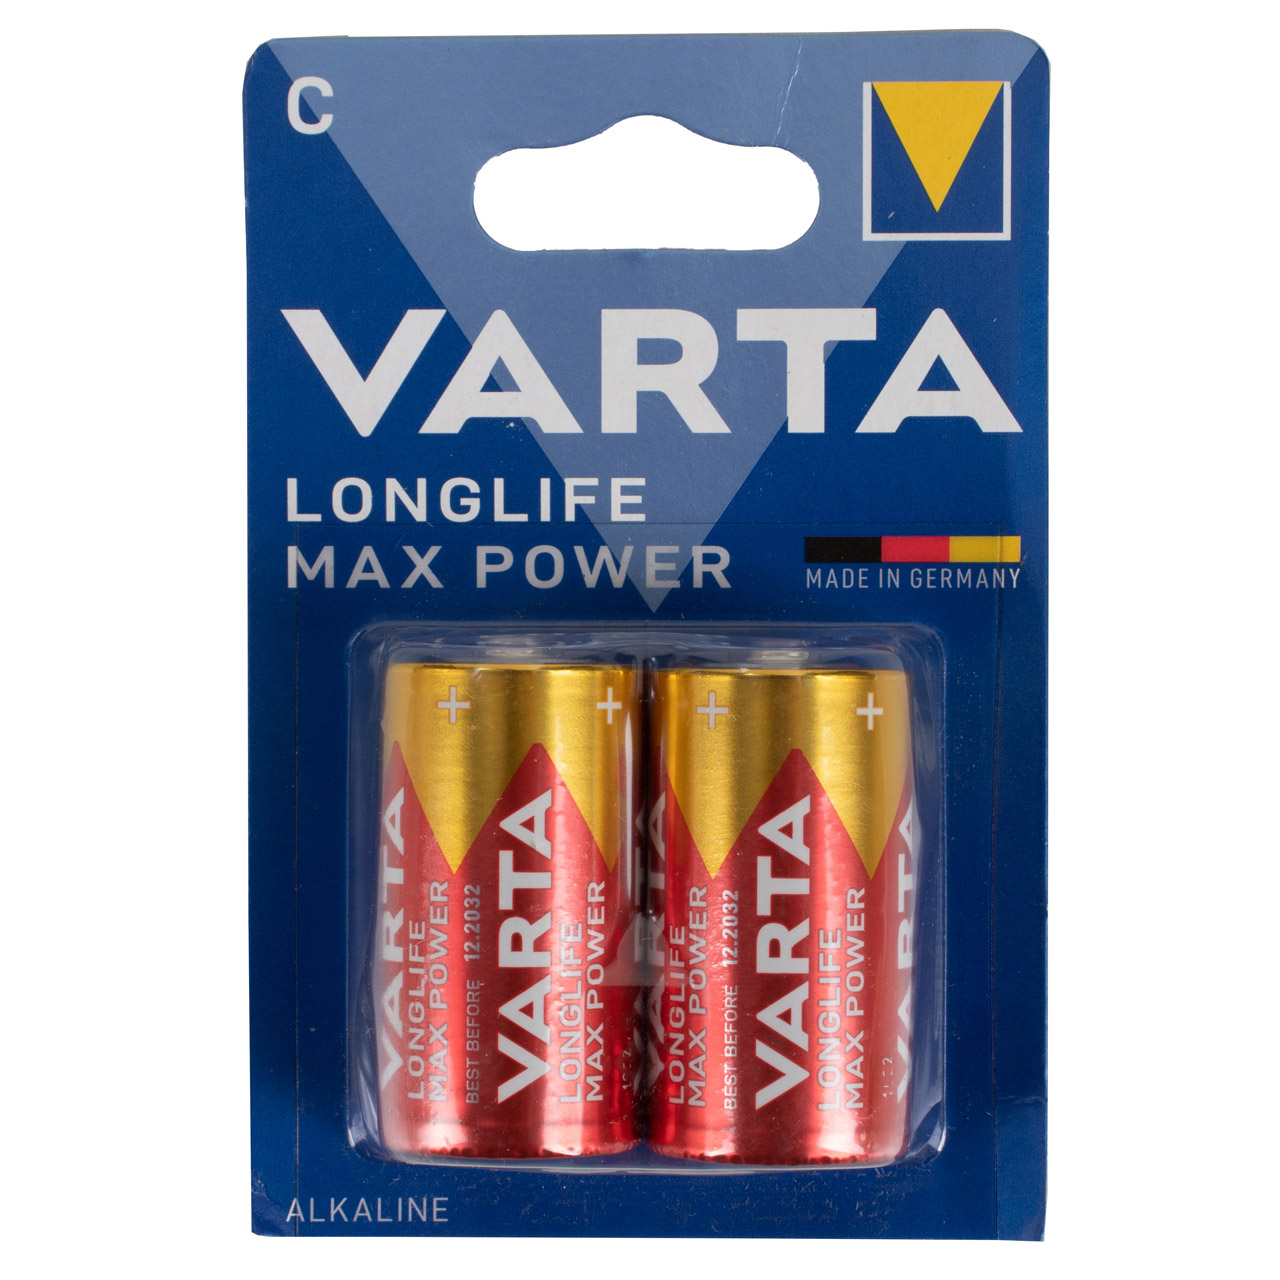 2x VARTA LONGLIFE MAX POWER ALKALINE Batterie C BABY 4714 LR14 MN1400 1,5V